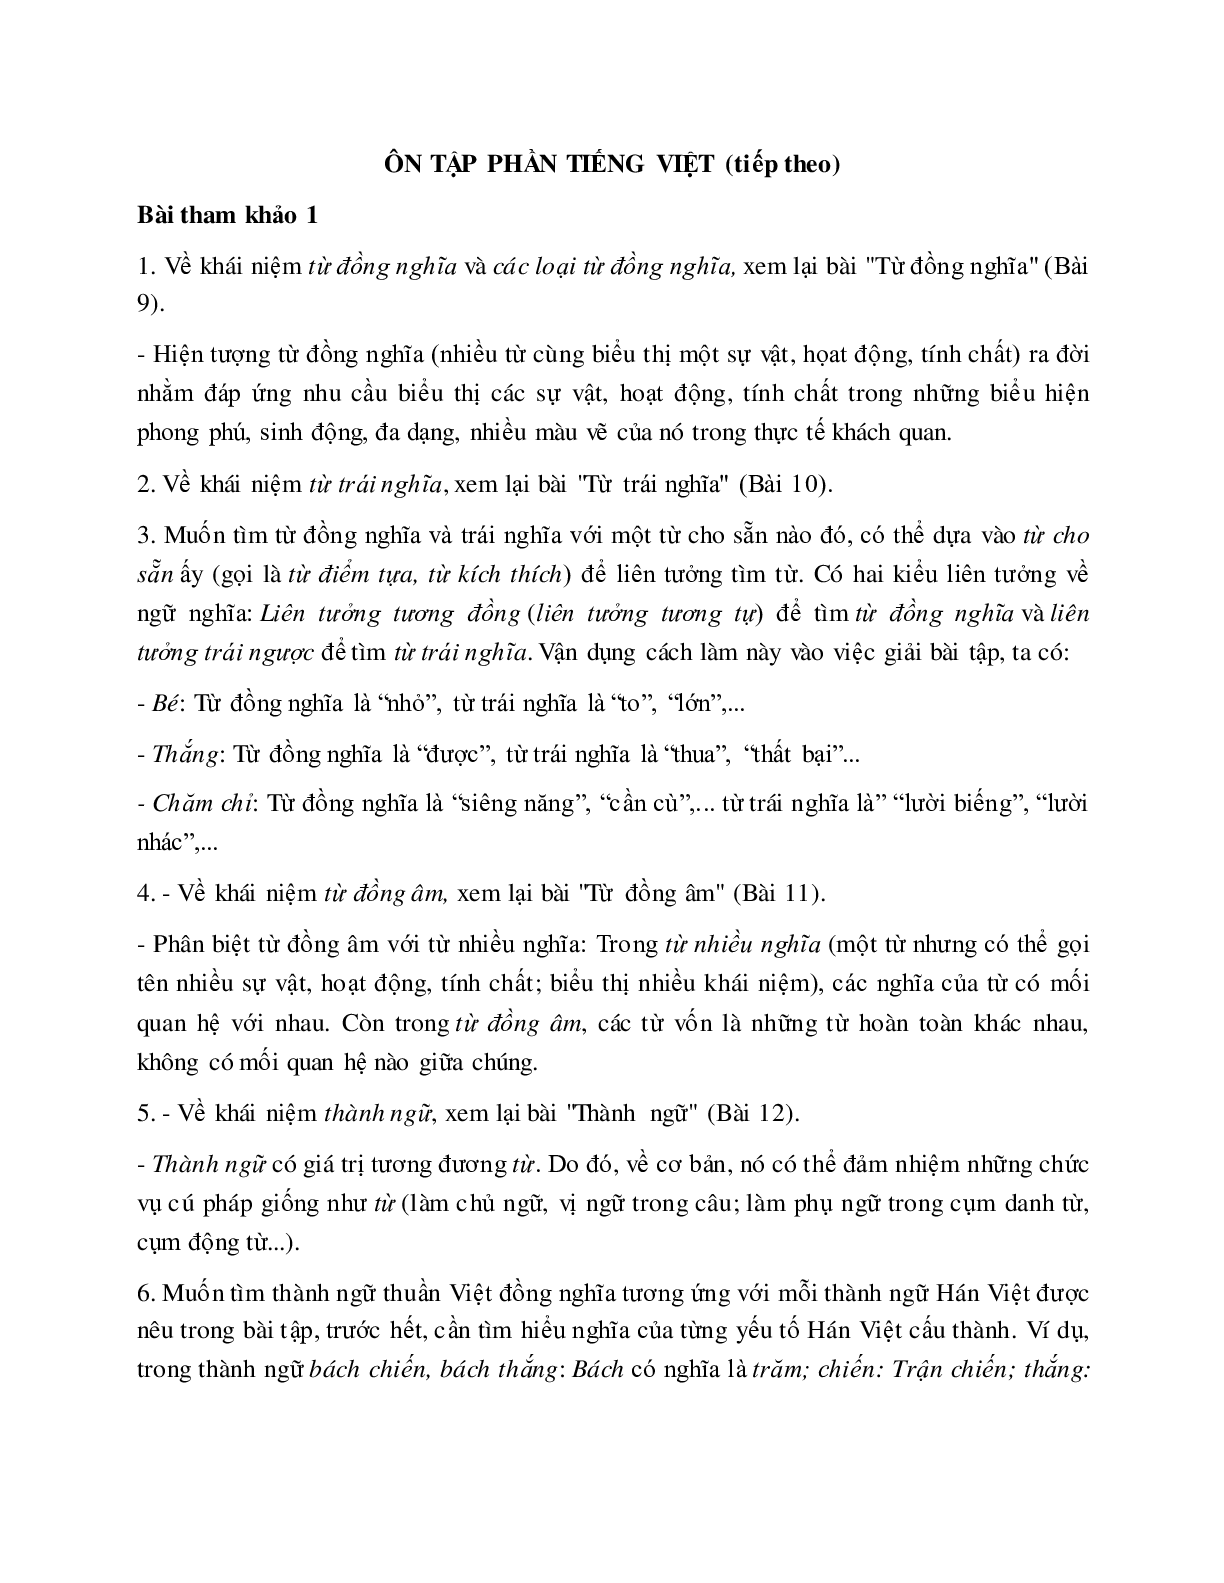 Soạn bài Ôn tập phần tiếng Việt (Tiếp theo) - ngắn nhất Soạn văn 7 (trang 1)